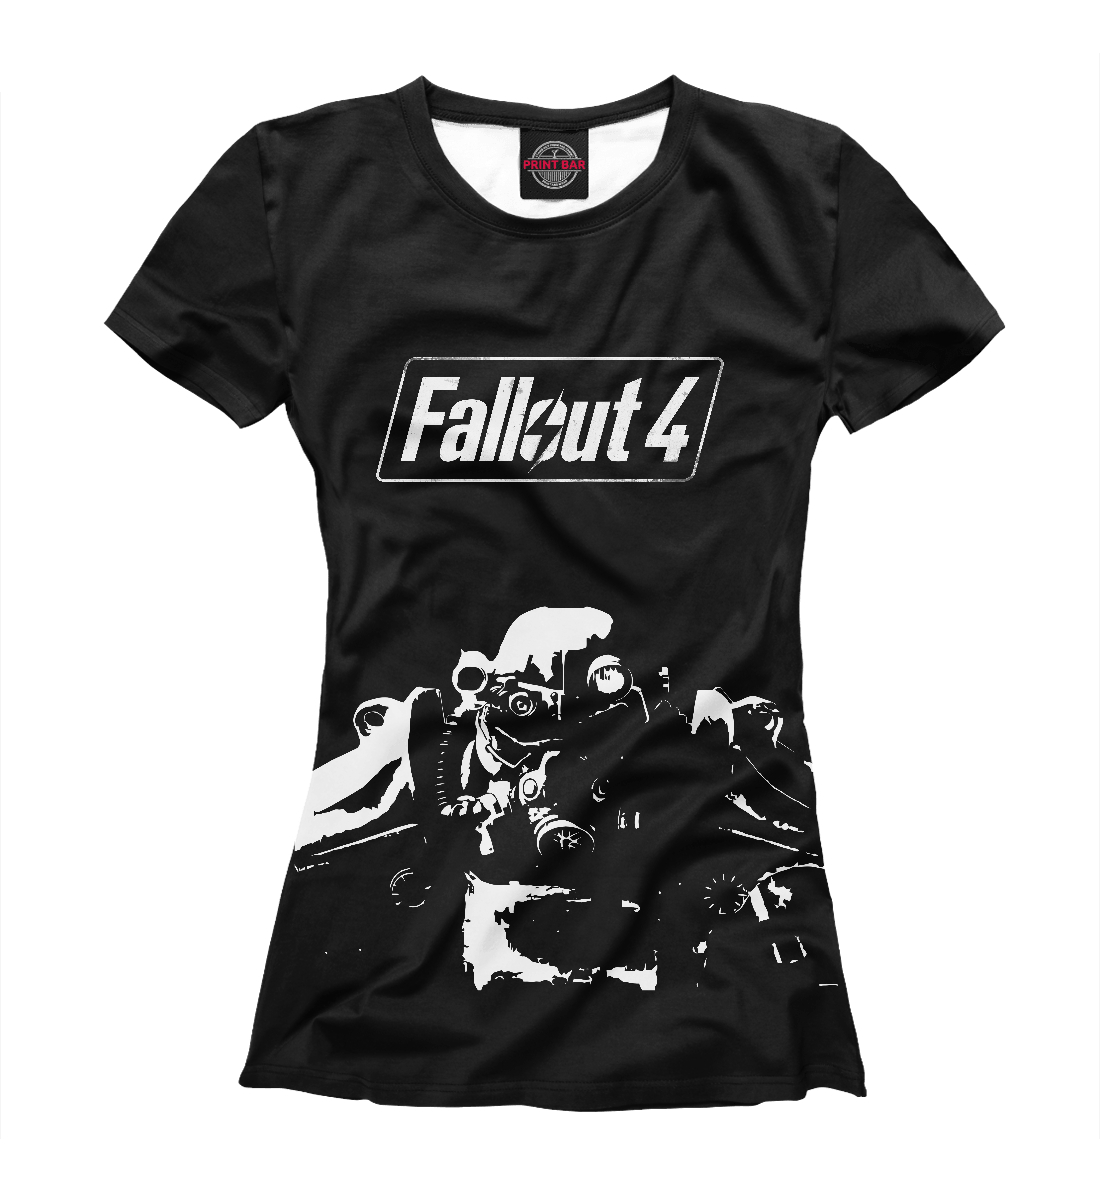 Футболка Fallout 4 для девочек, артикул: FOT-734035-fut-1mp